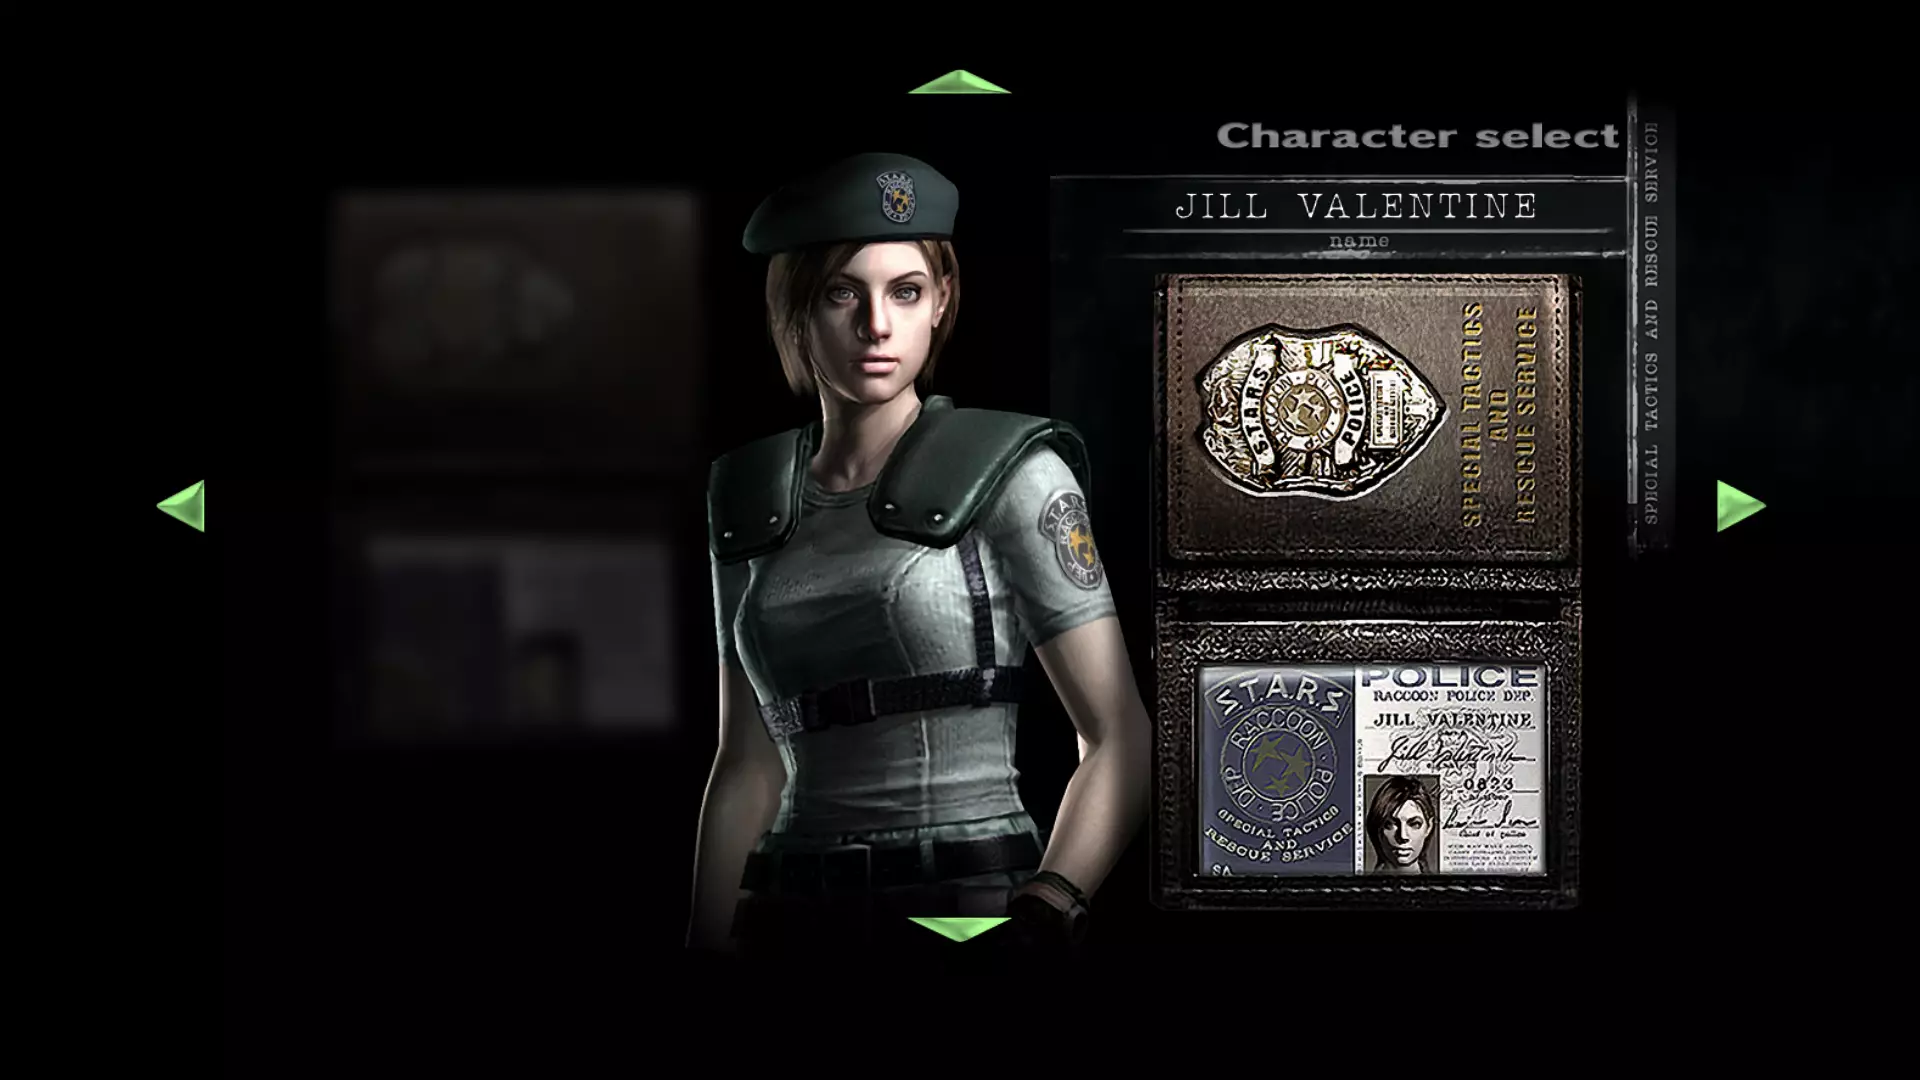 Jill as she appears in Resident Evil Remake, 2002/2015 /